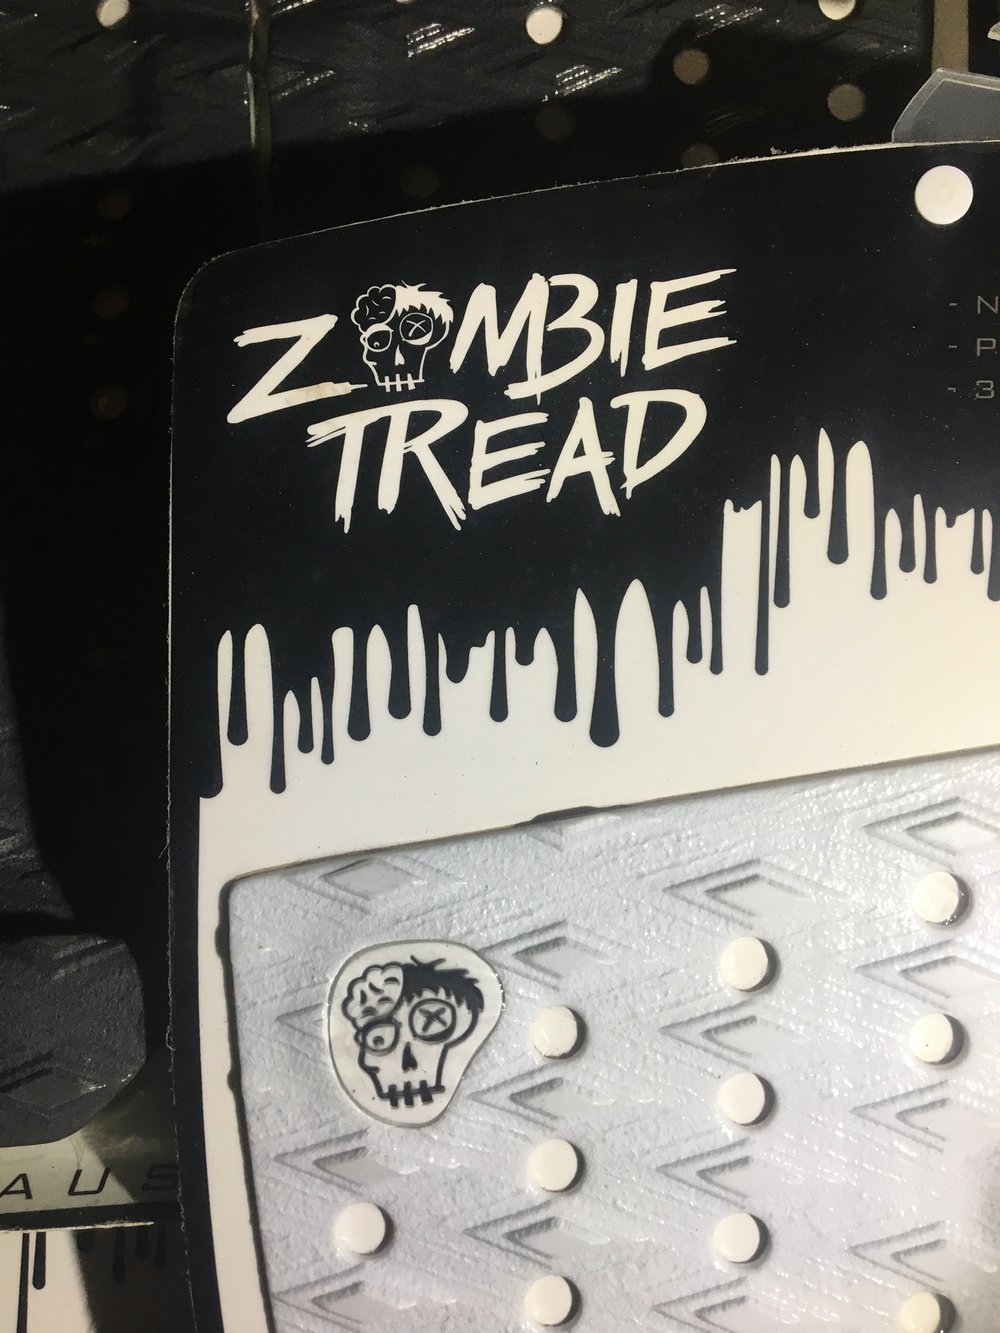 Zombie tread Wade Goodall black traction pad 